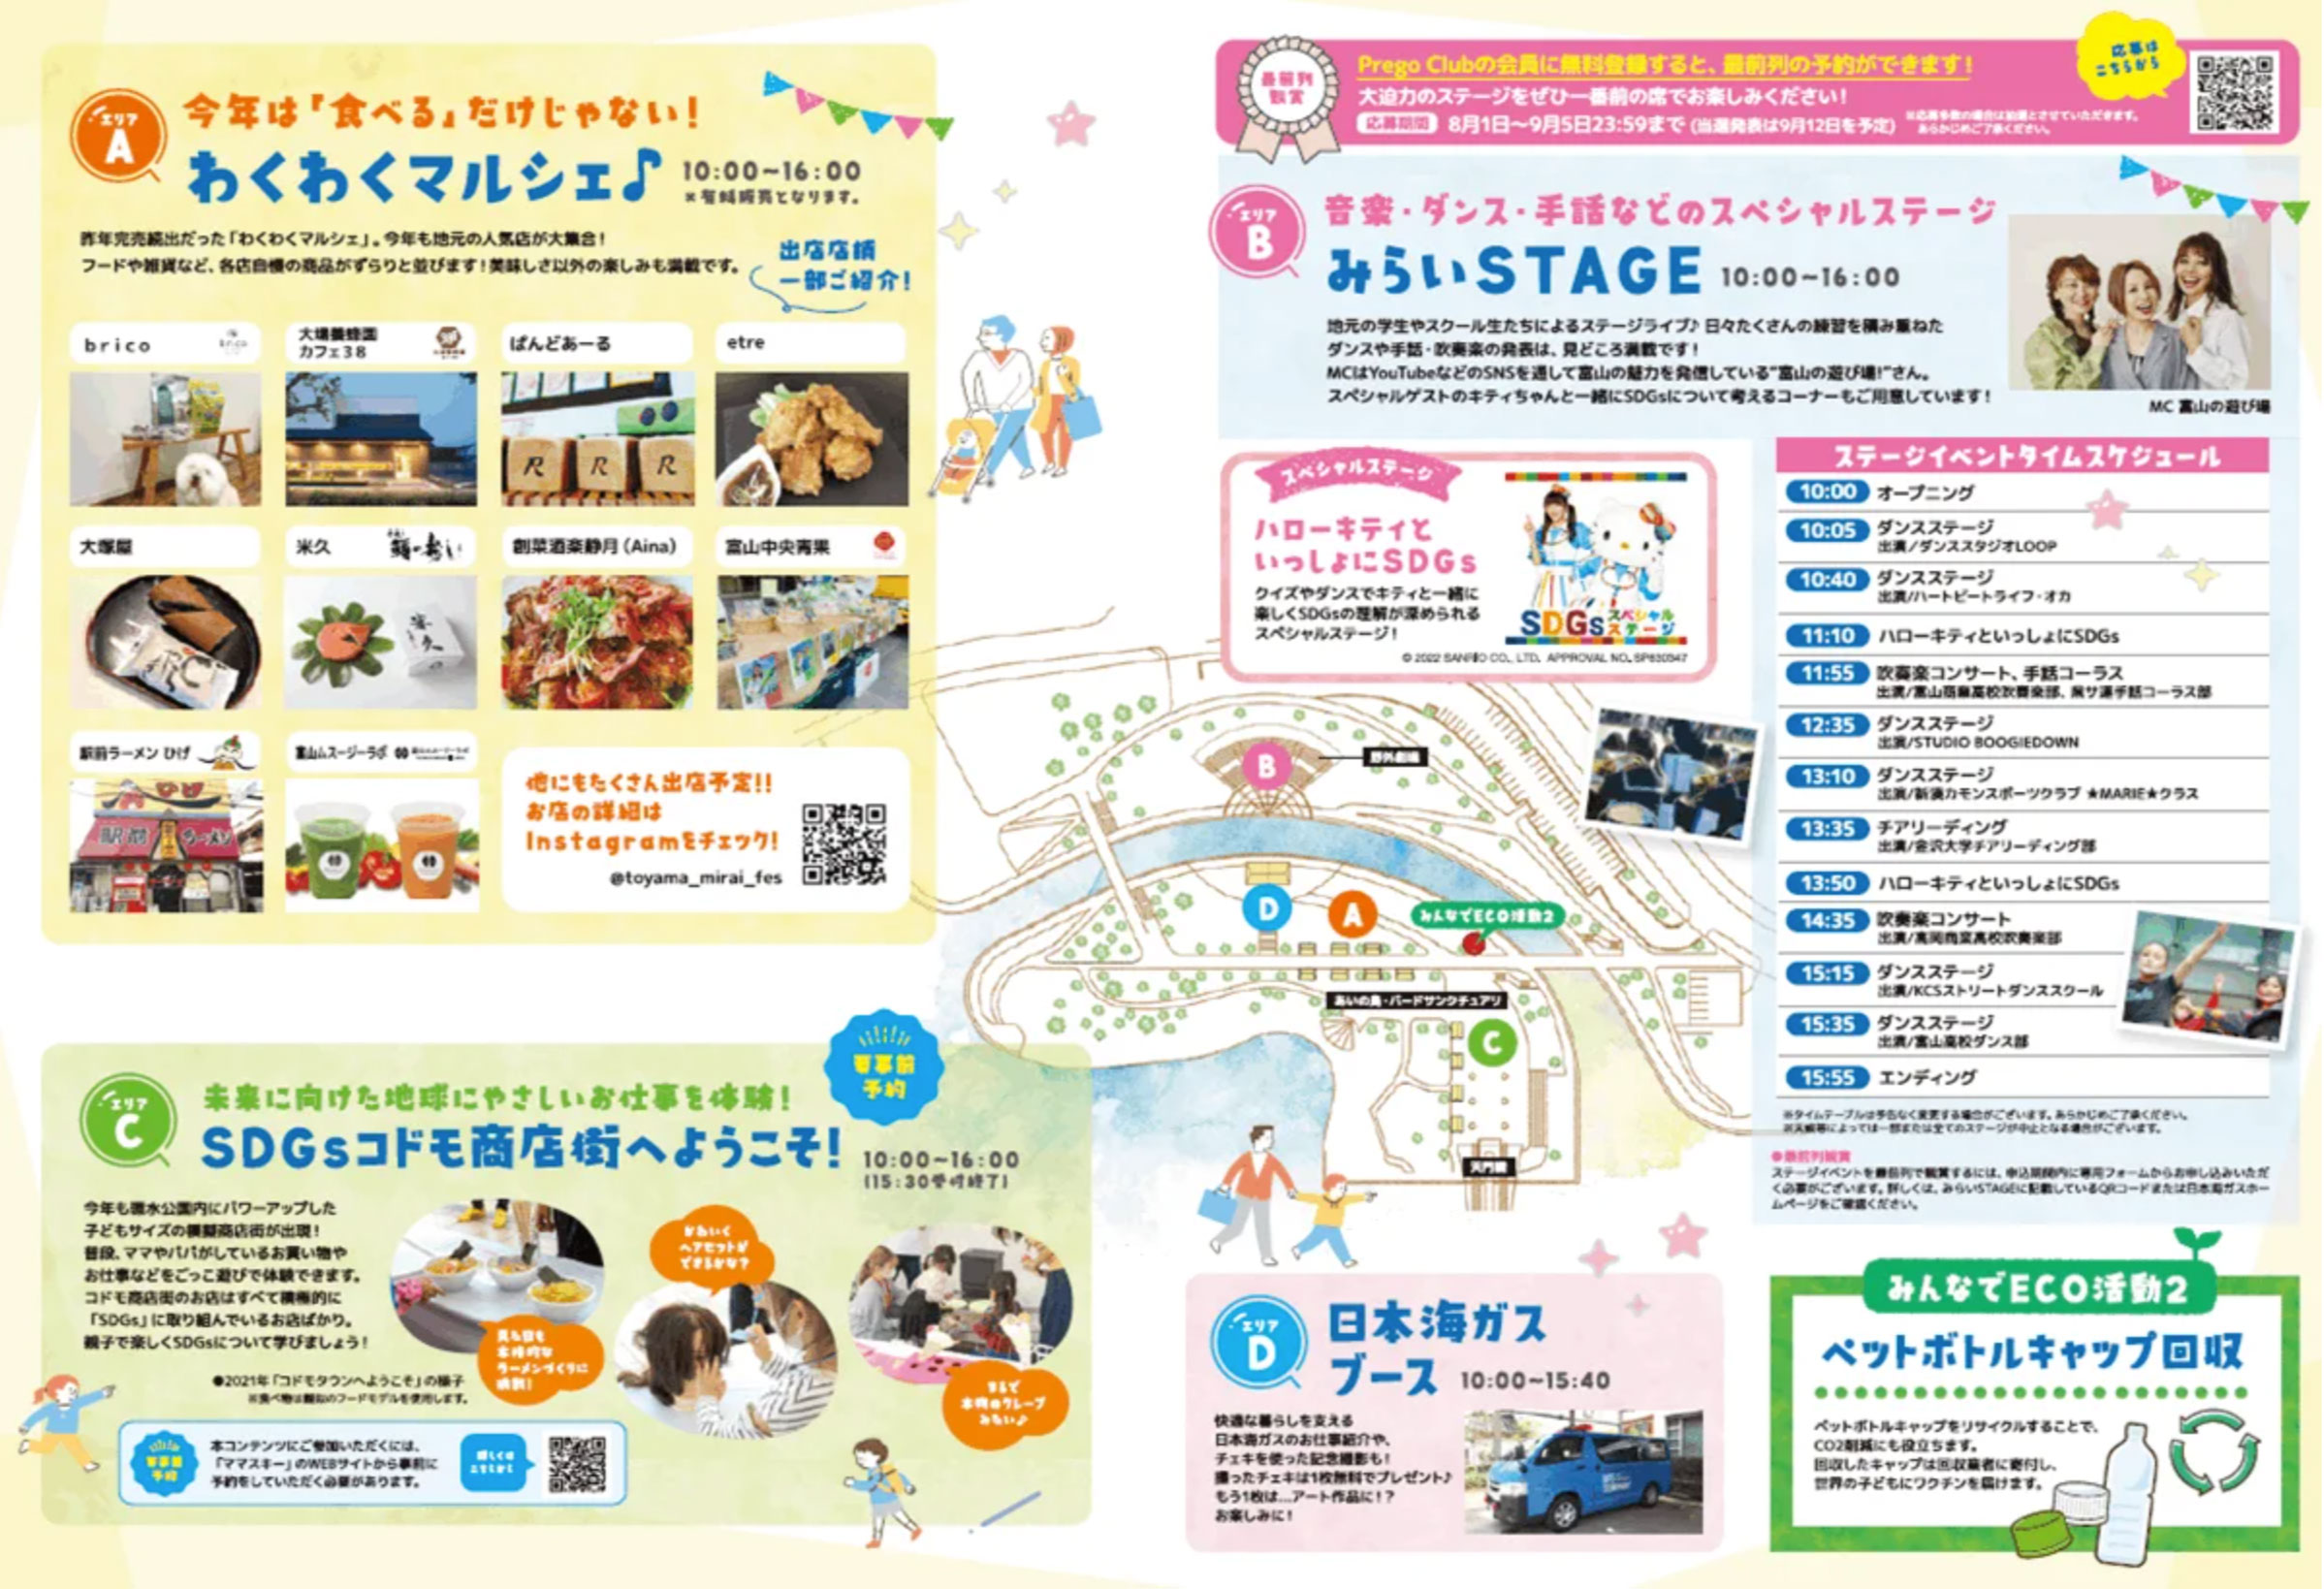 富山市環水公園で開催される「とやまみらいフェス」のイベント内容